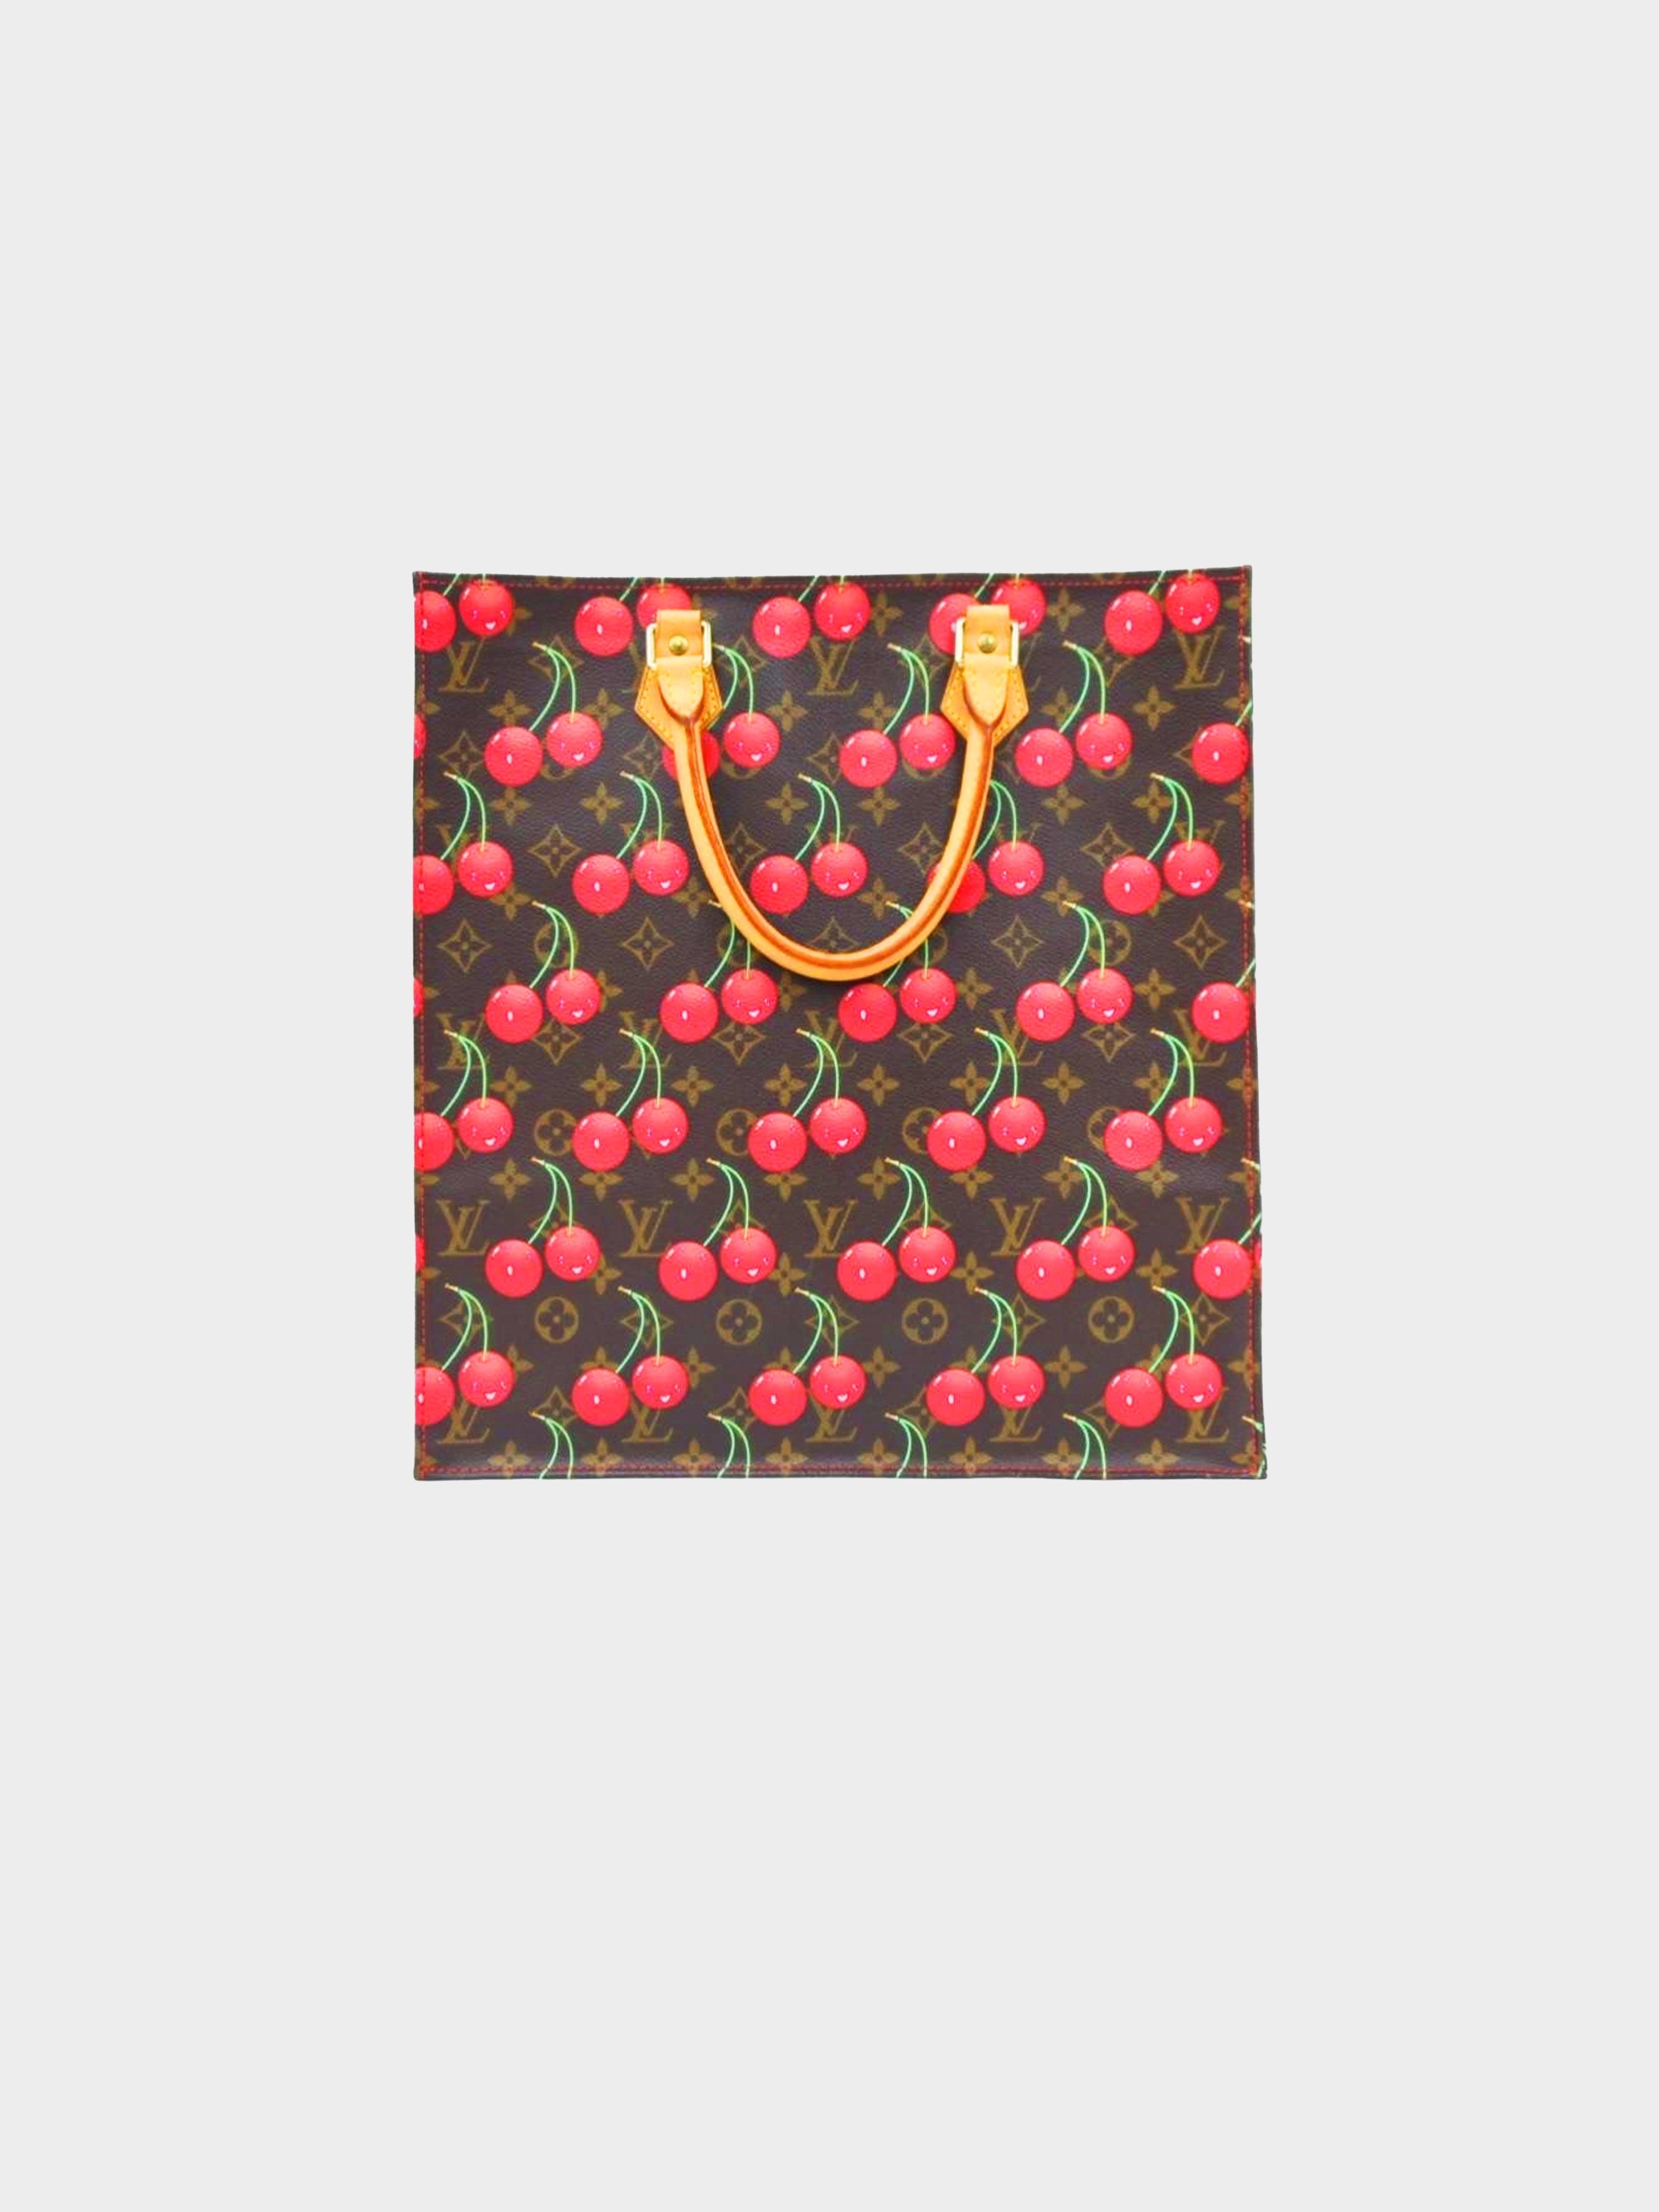 Louis Vuitton 2005 Takashi Murakami Cherry Shoulder Bag · INTO